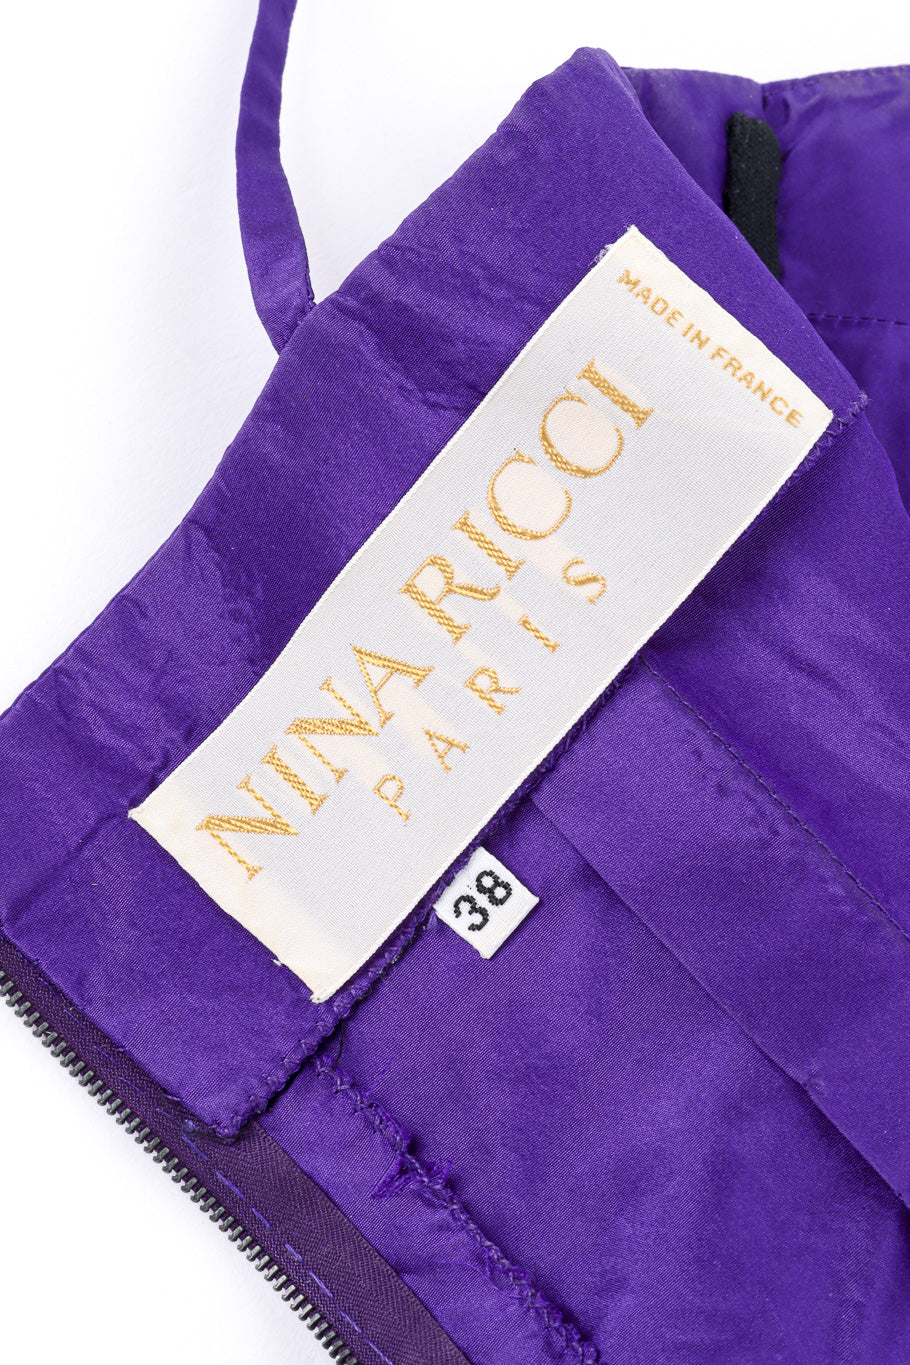 Velvet Bow Dress by Nina Ricci lining tag @recessla